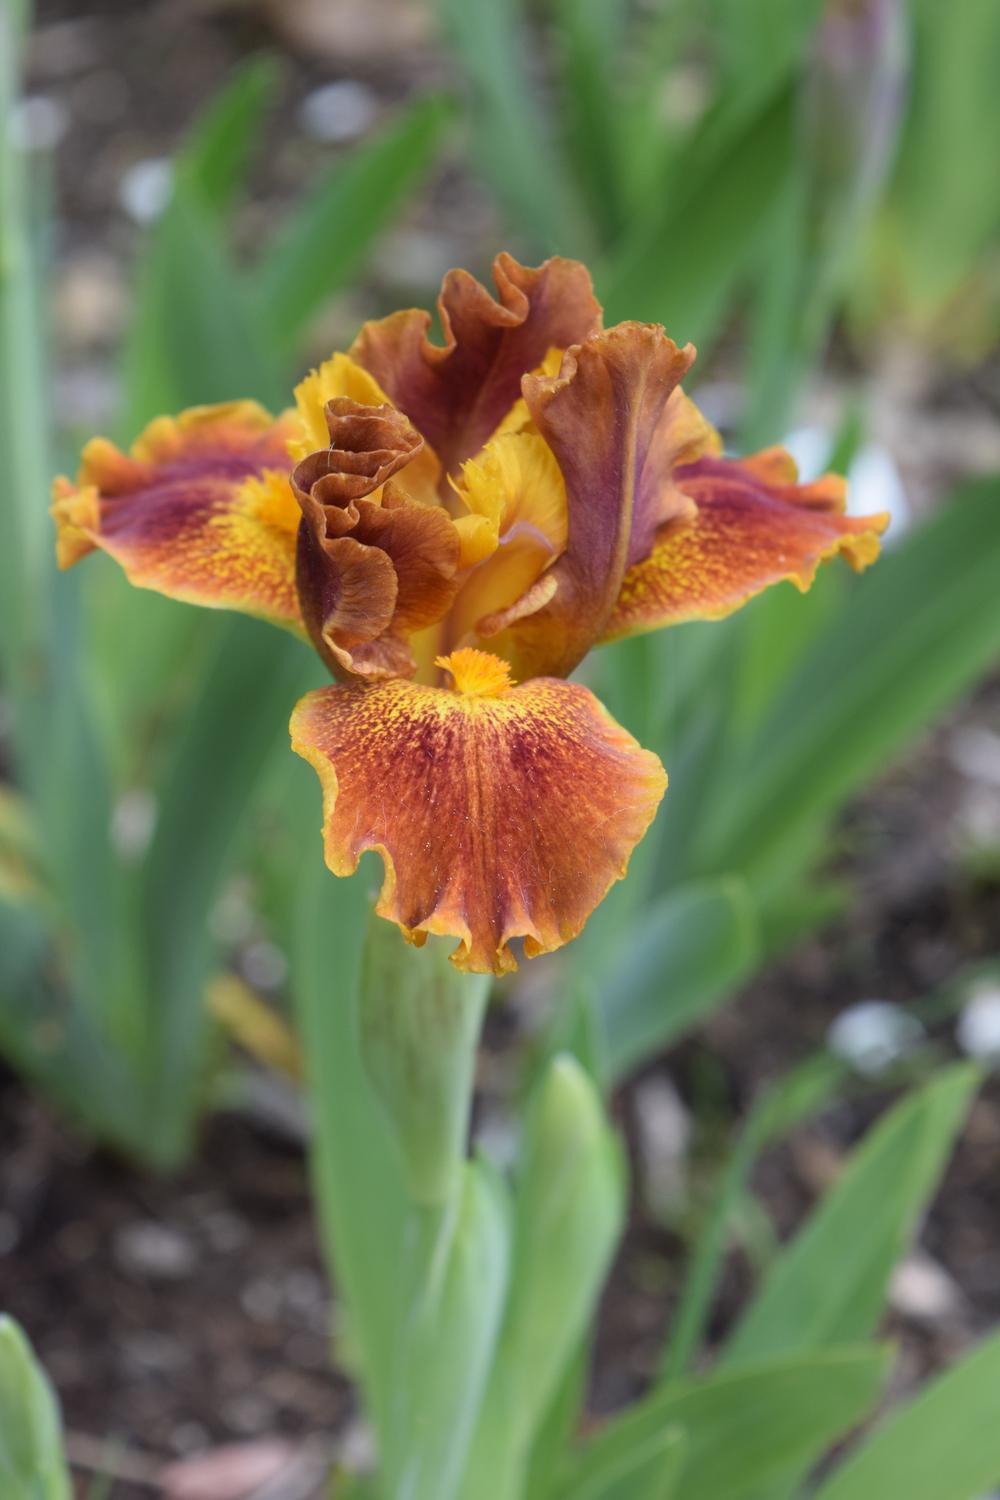 Photo of Standard Dwarf Bearded Iris (Iris 'Basket of Goodies') uploaded by Dachsylady86